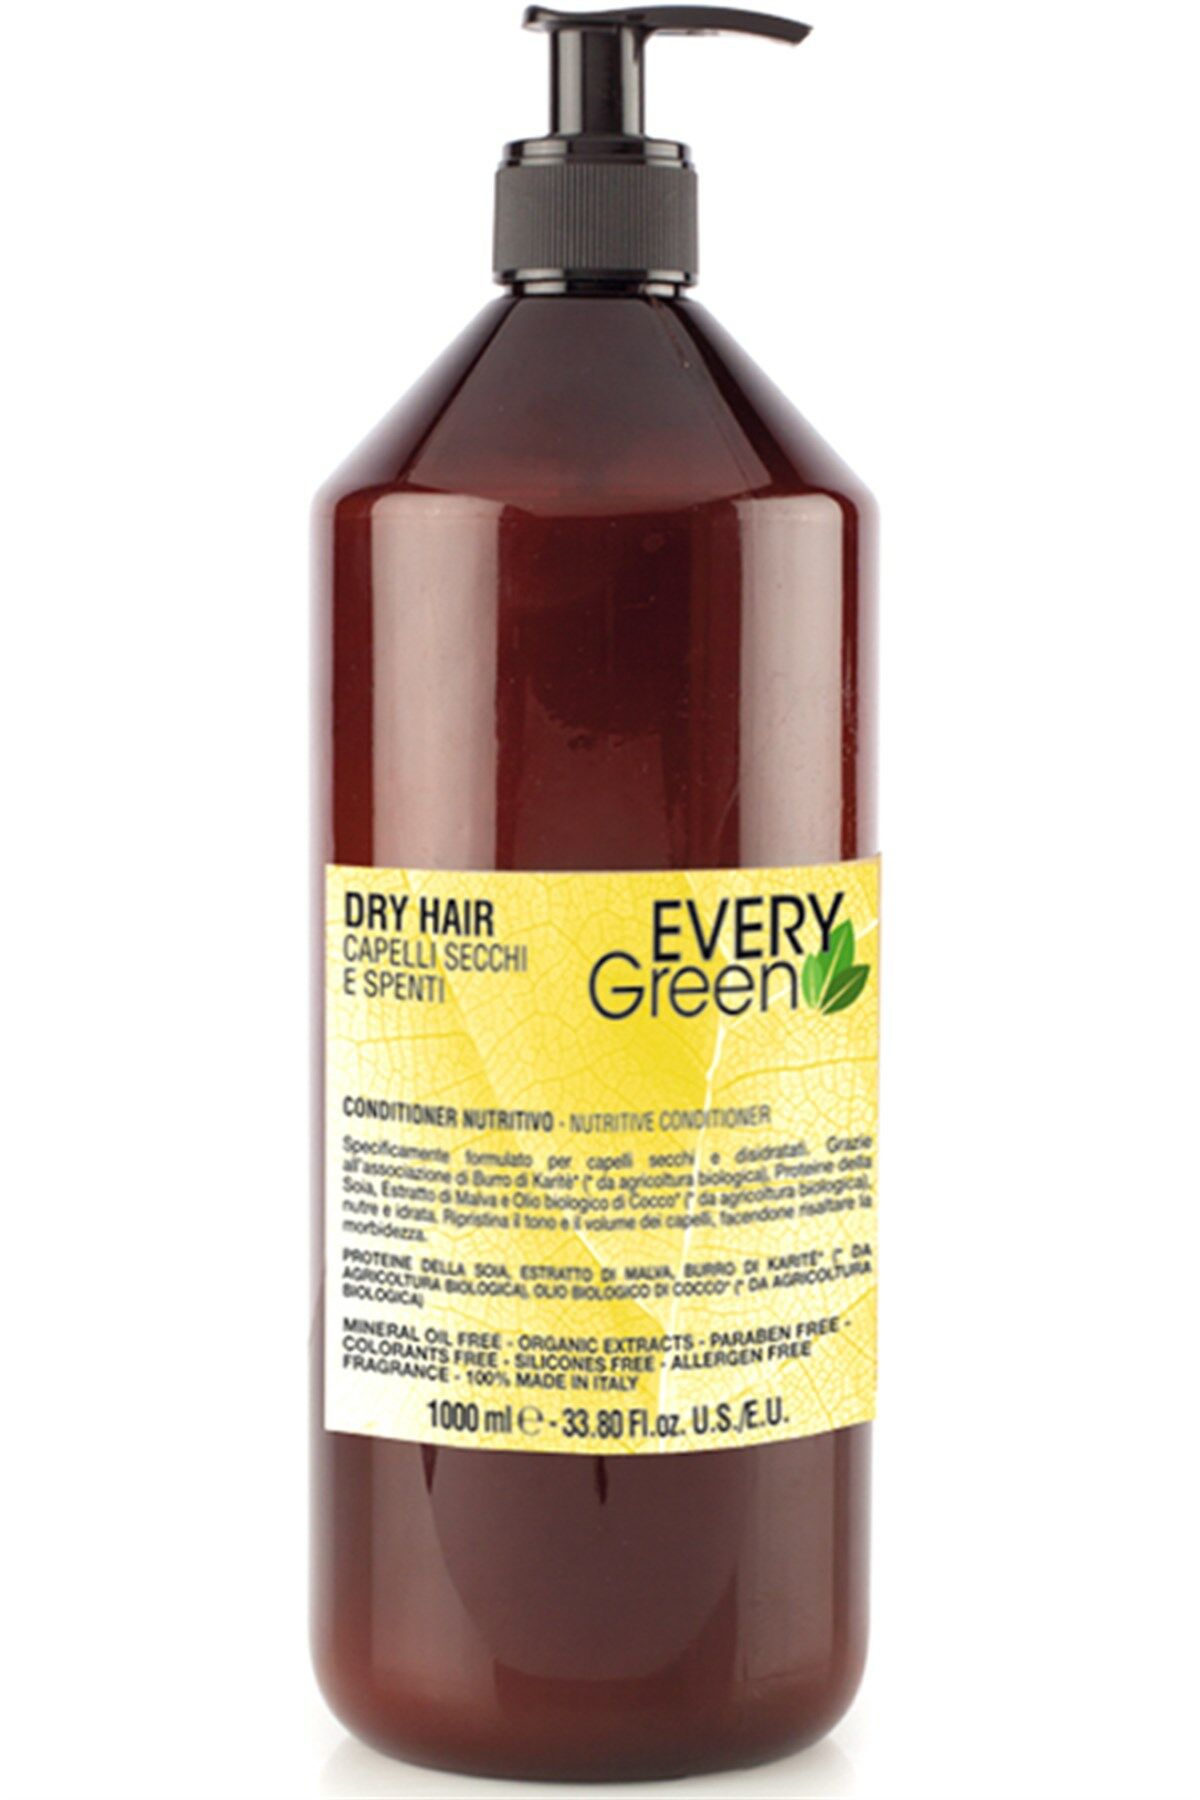 EveryGreen Dry Hair Nutritive Conditioner - Kuru Saçlara Özel Bakım Kremi 1000 Ml.